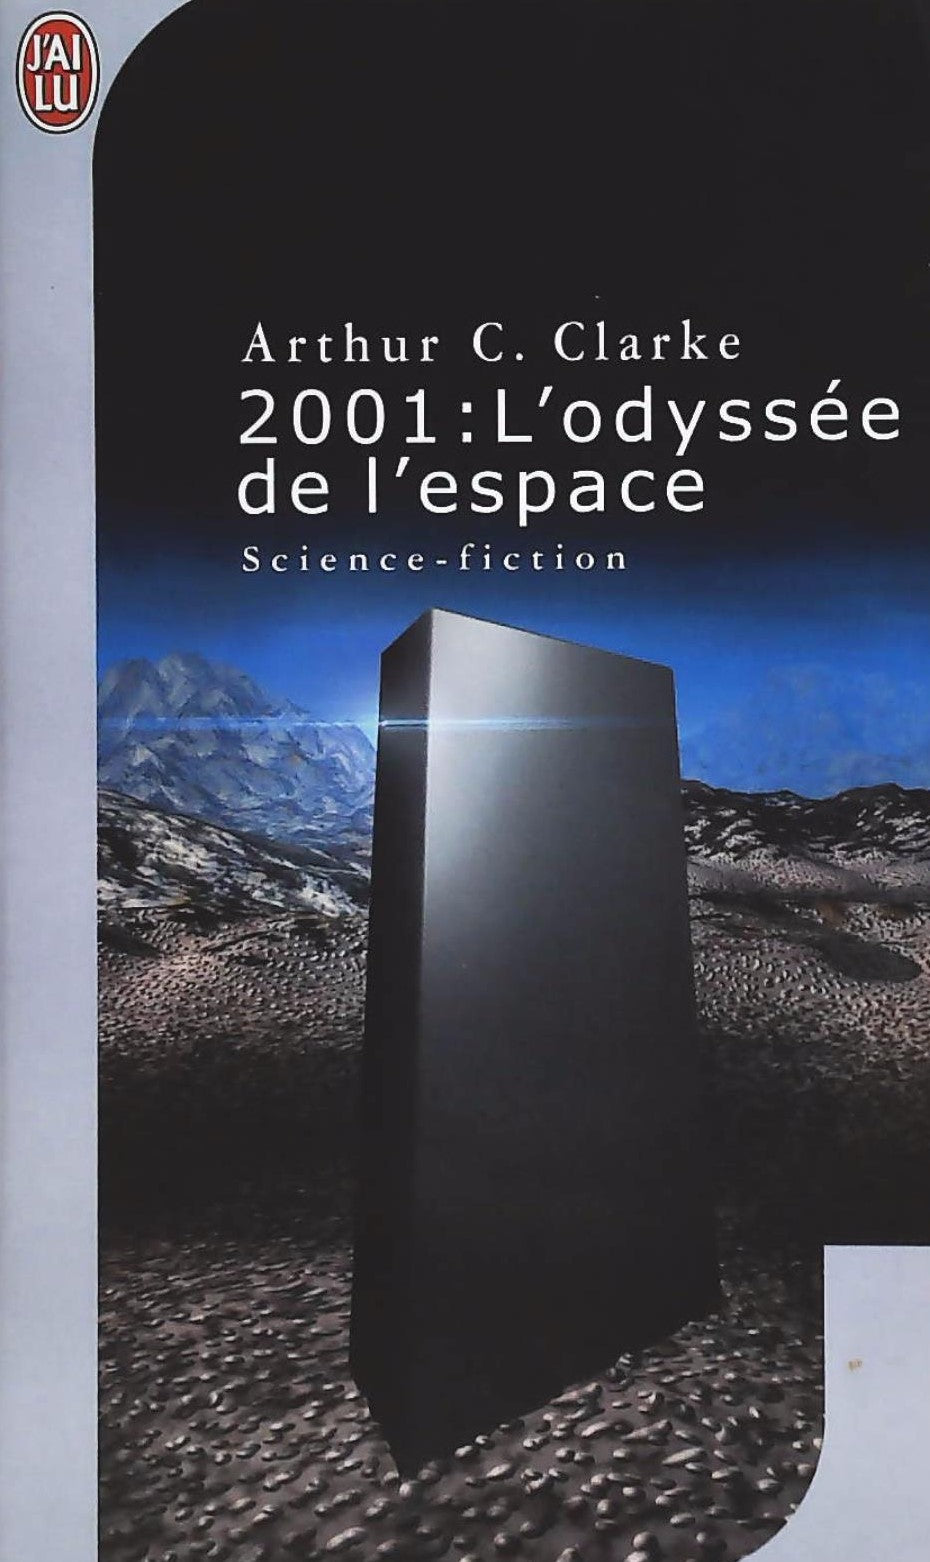 Livre ISBN  2001 L'odyssée de l'espace (Arthur C. Clarke)